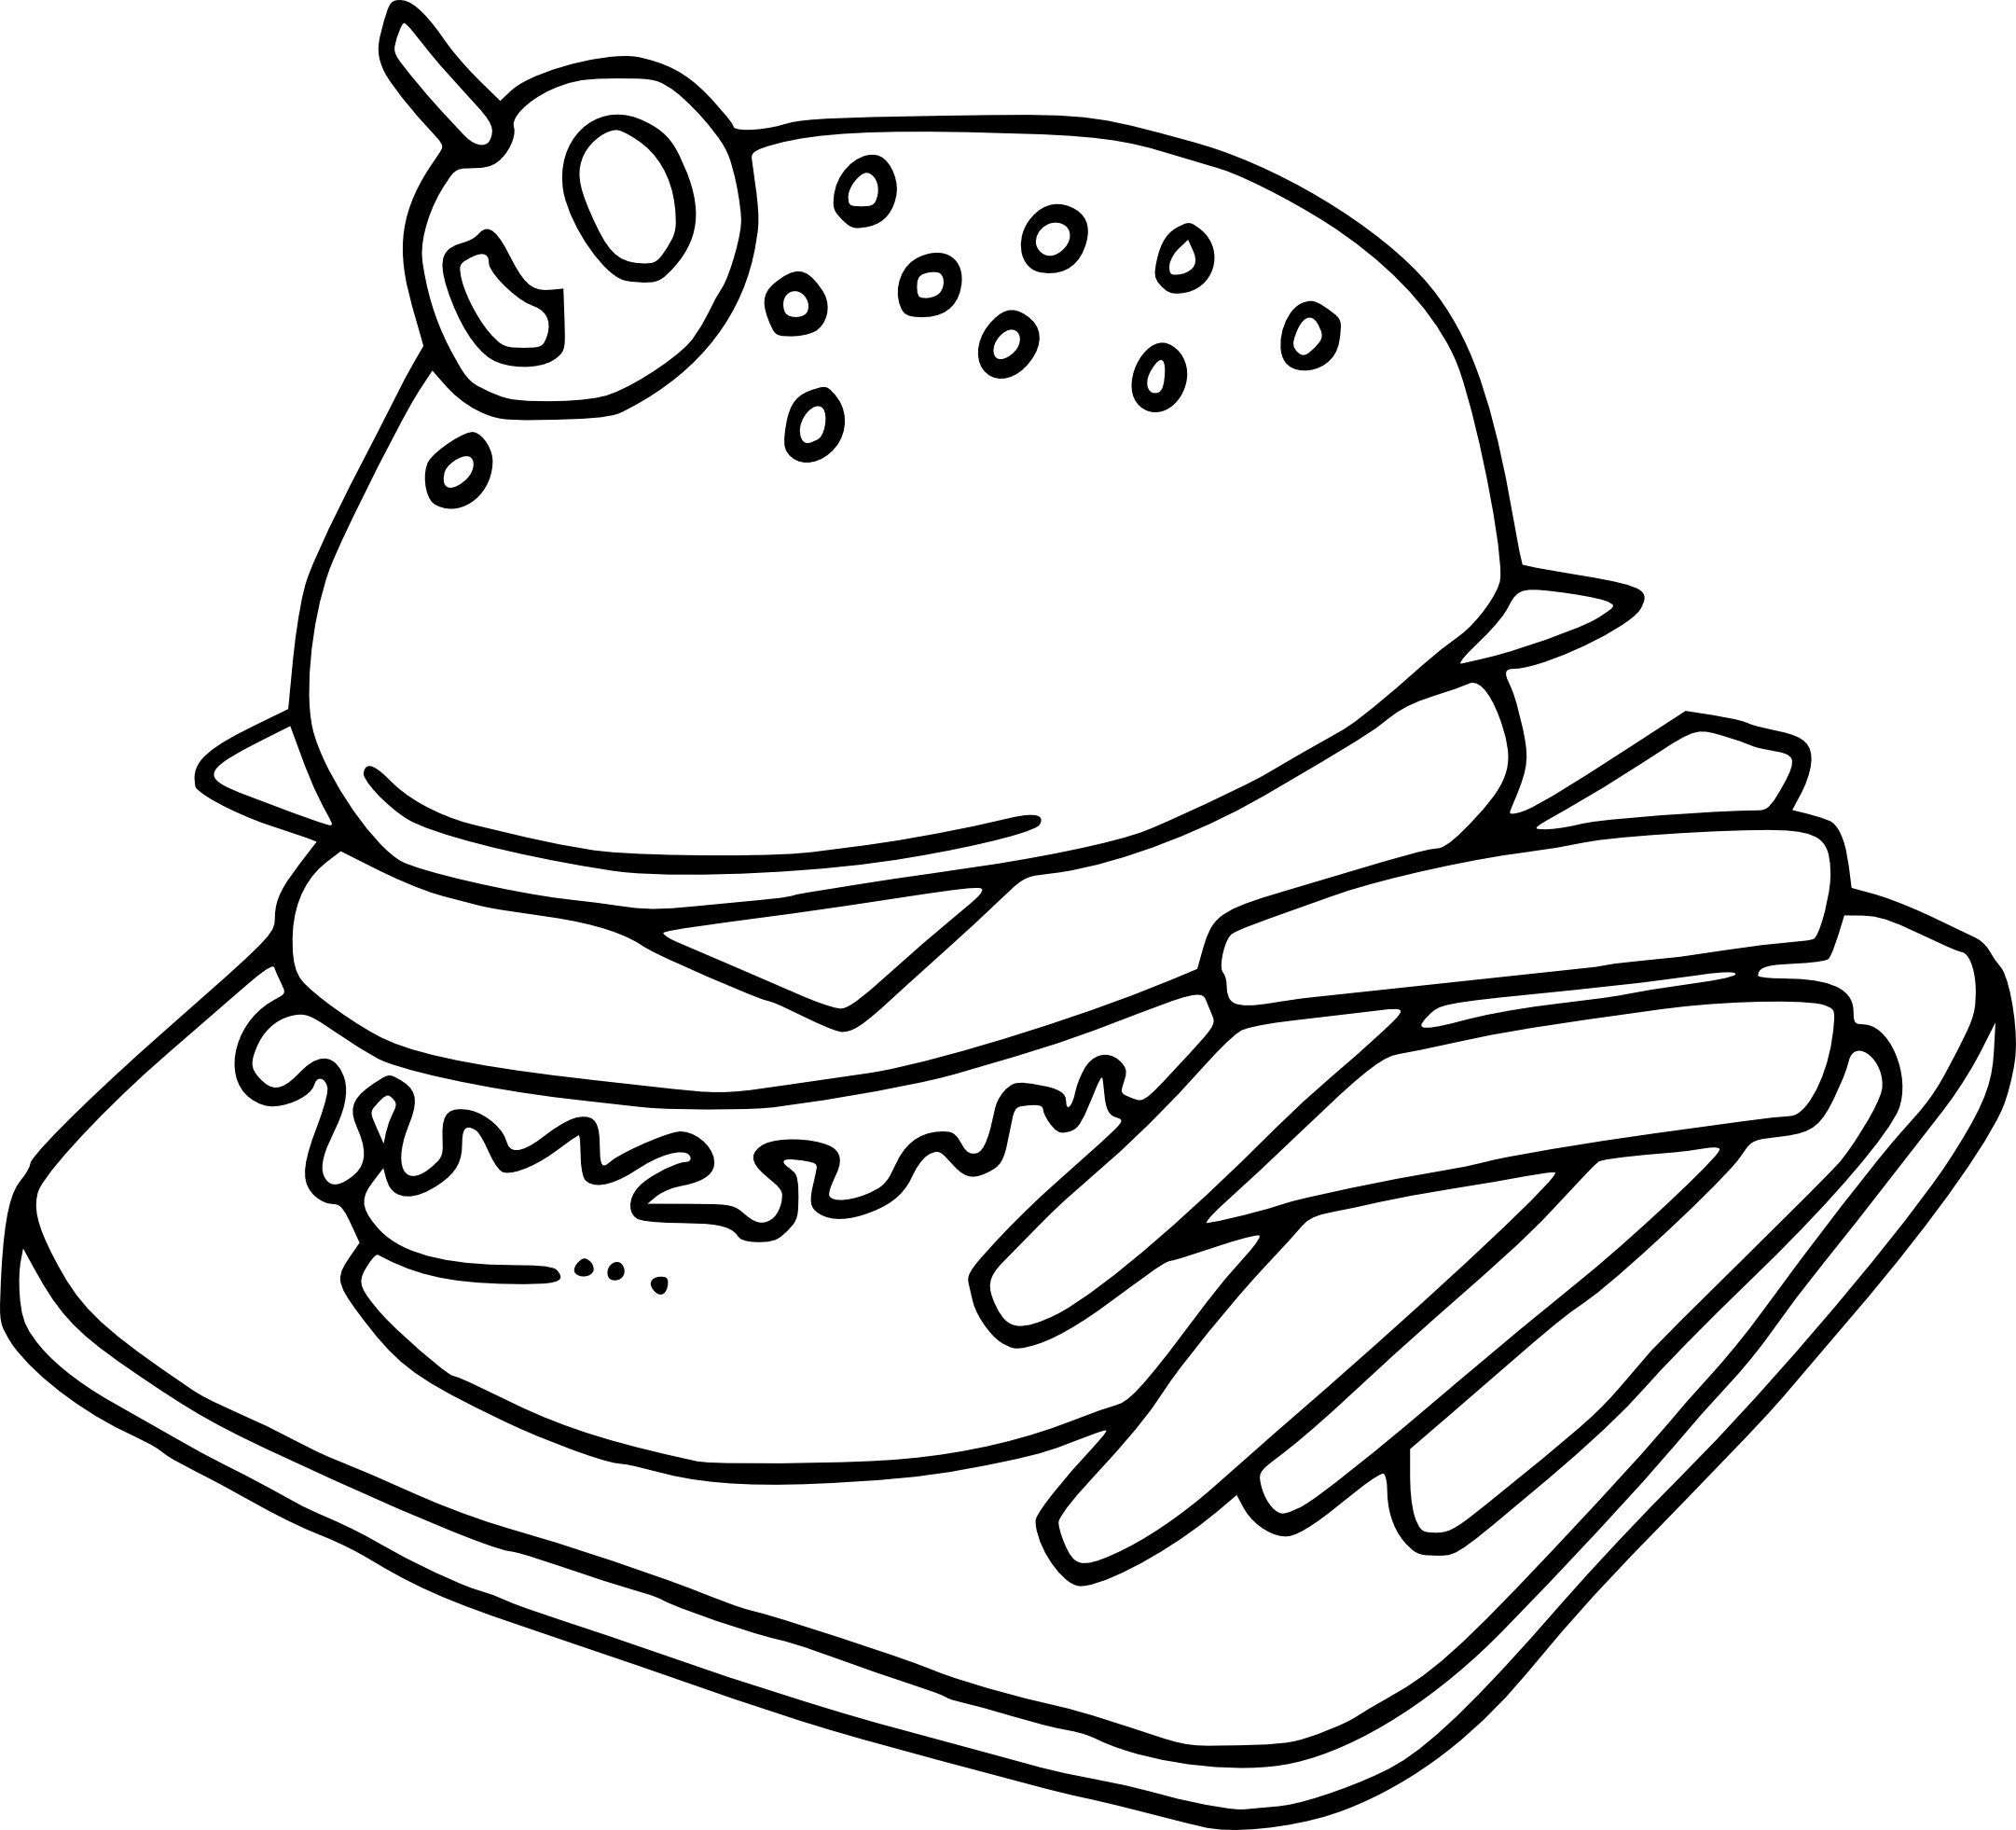 Еда раскрасить. Раскраска еда. Раскраска бургер. Раскраска гамбургер. Раскраска бутерброд.